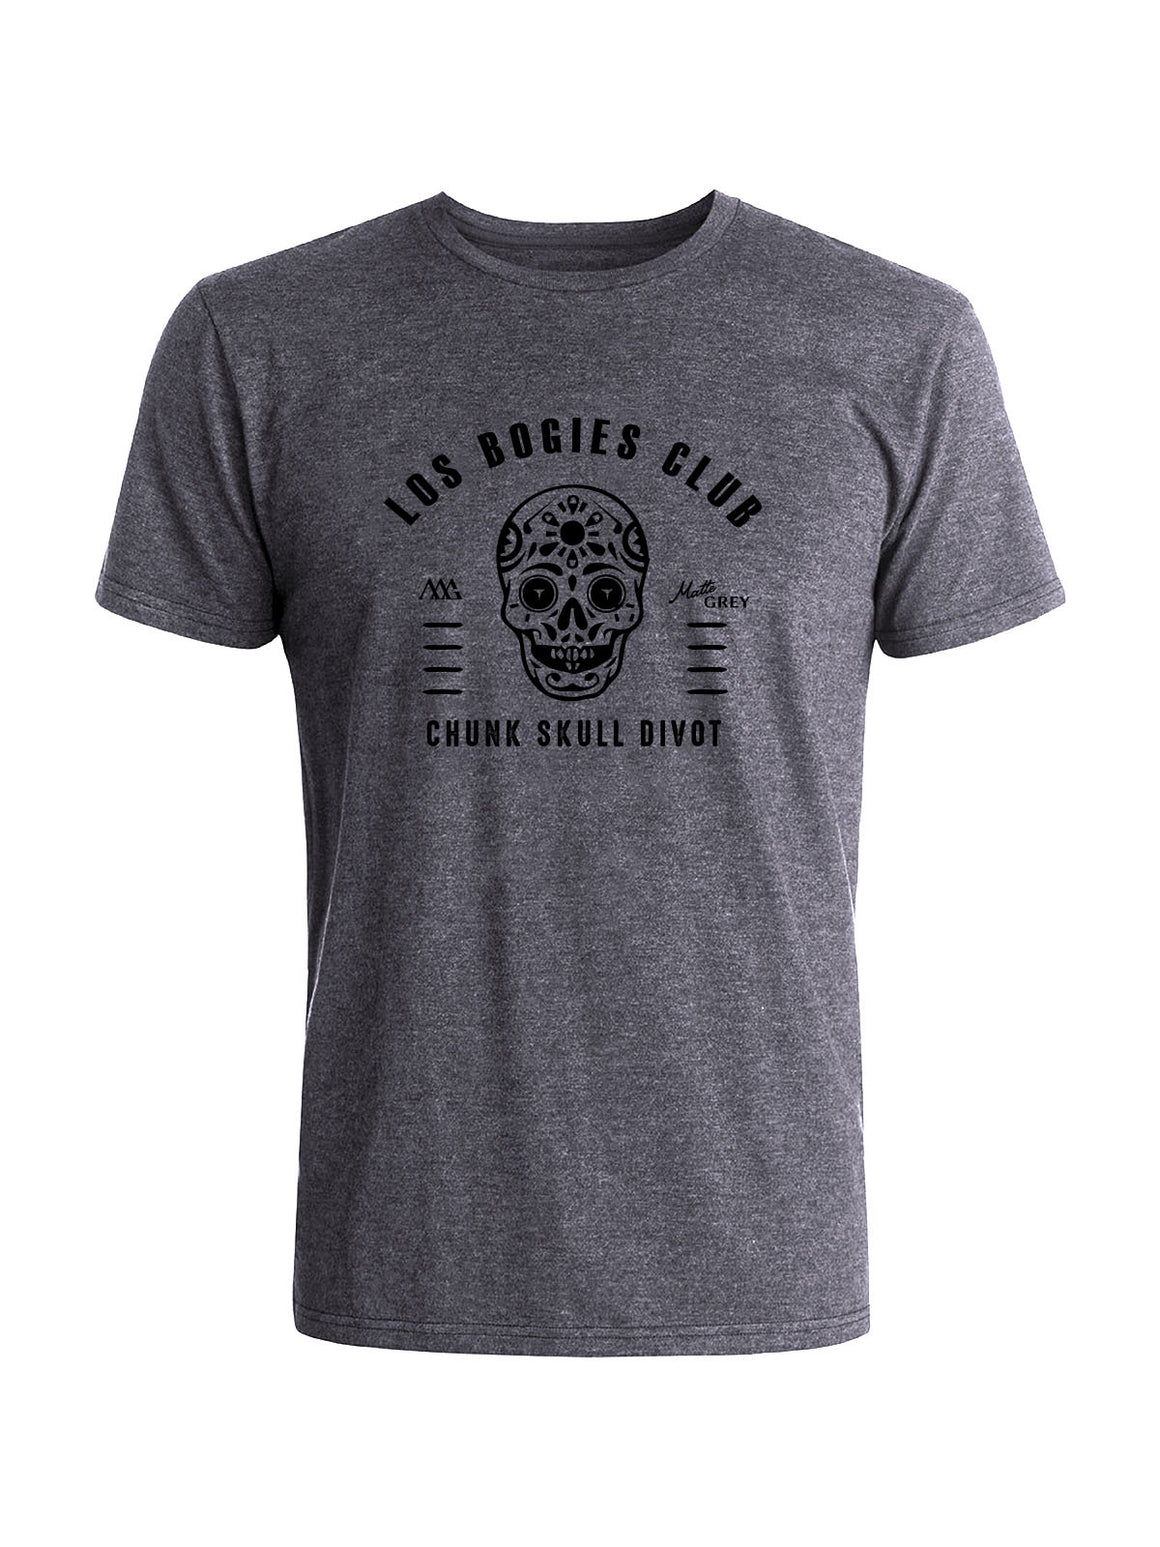 Los Bogies Club Tee - Steel (Black)